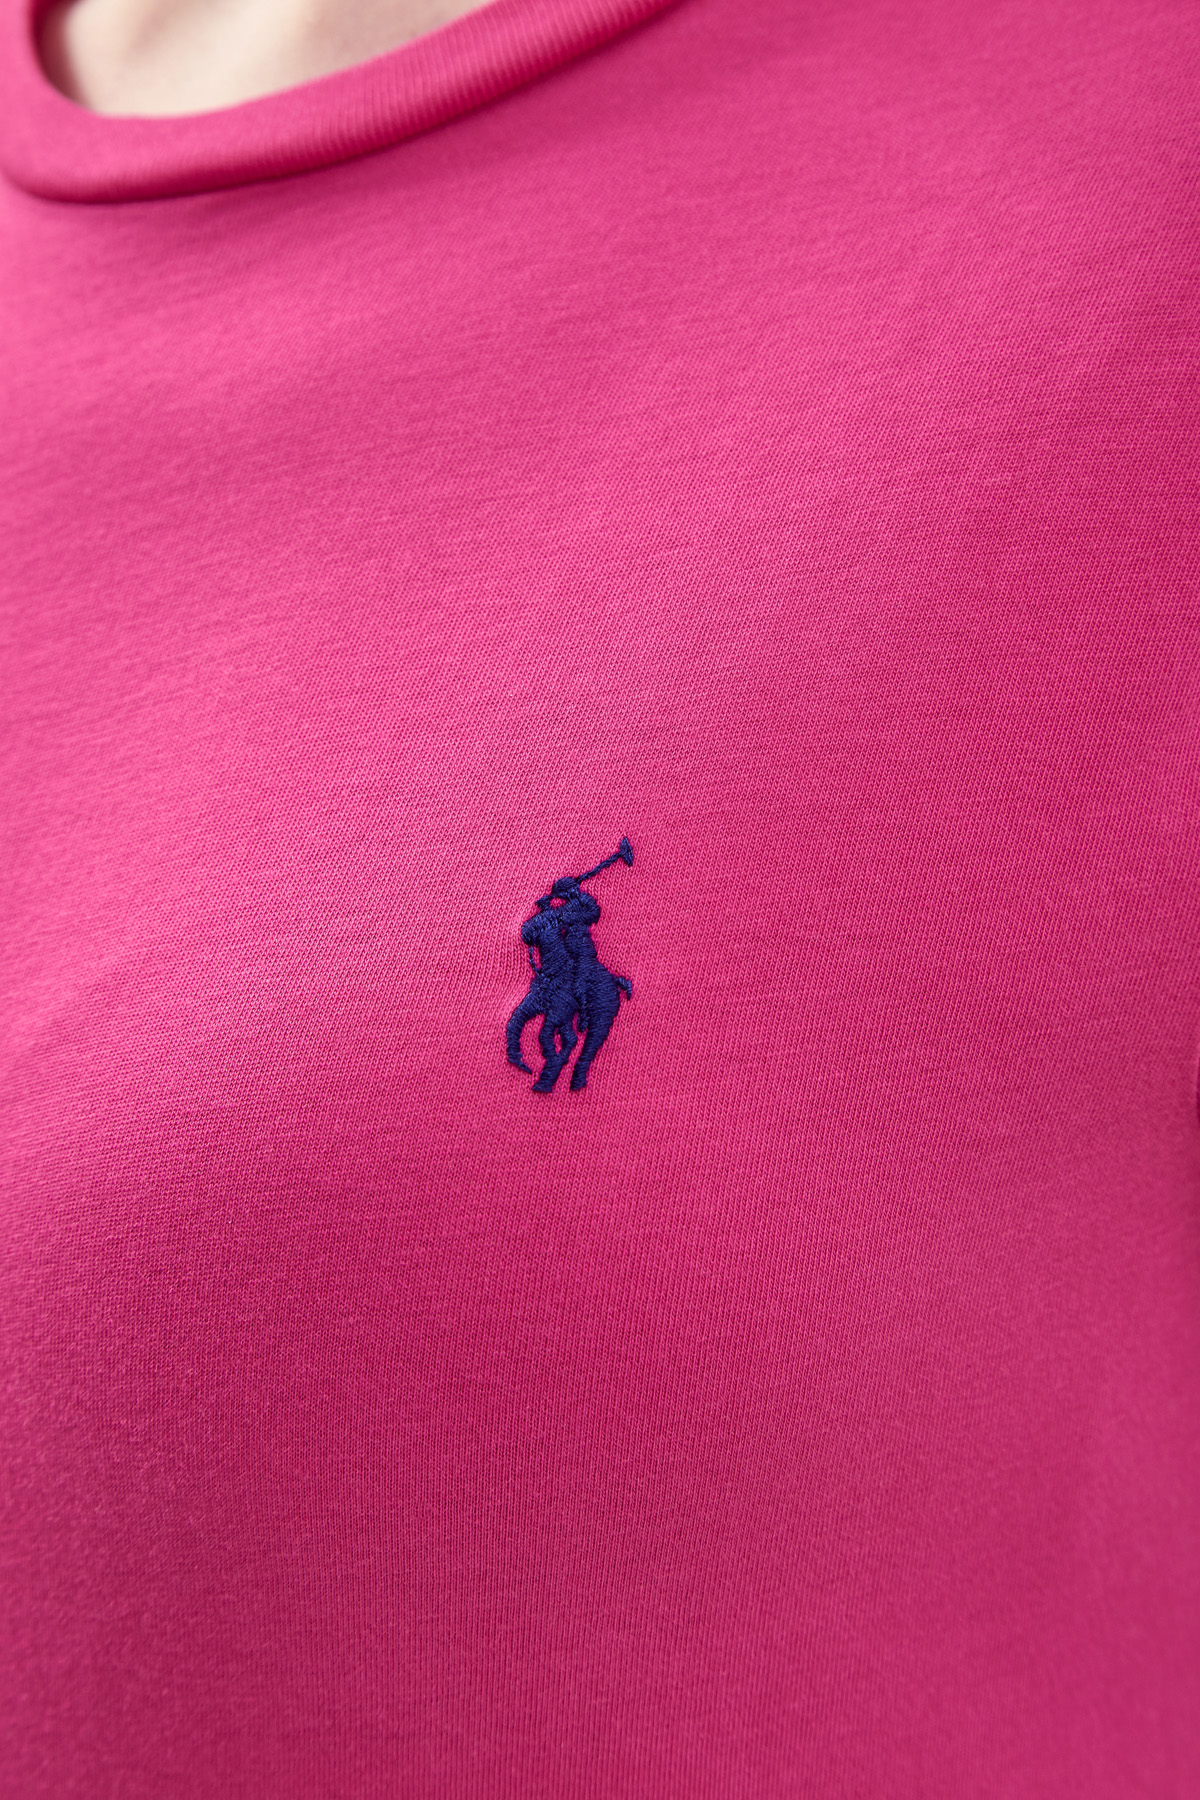 Футболка из хлопка джерси с вышитым логотипом POLO RALPH LAUREN, цвет розовый, размер S - фото 5